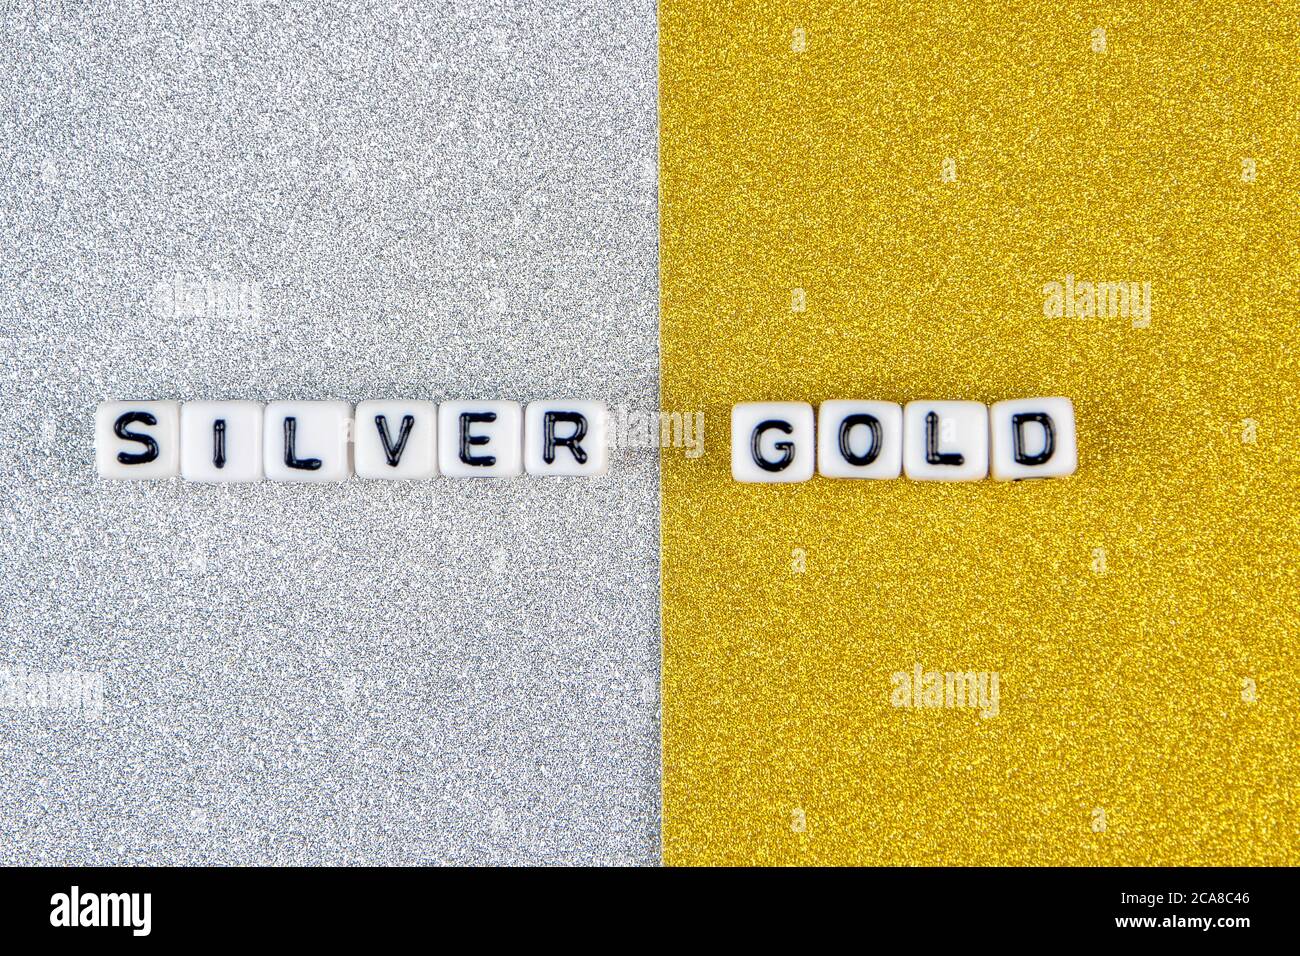 mots en argent et or formés de dés blancs avec des lettres noires sur fond argenté et doré, image divisée en deux moitiés Banque D'Images